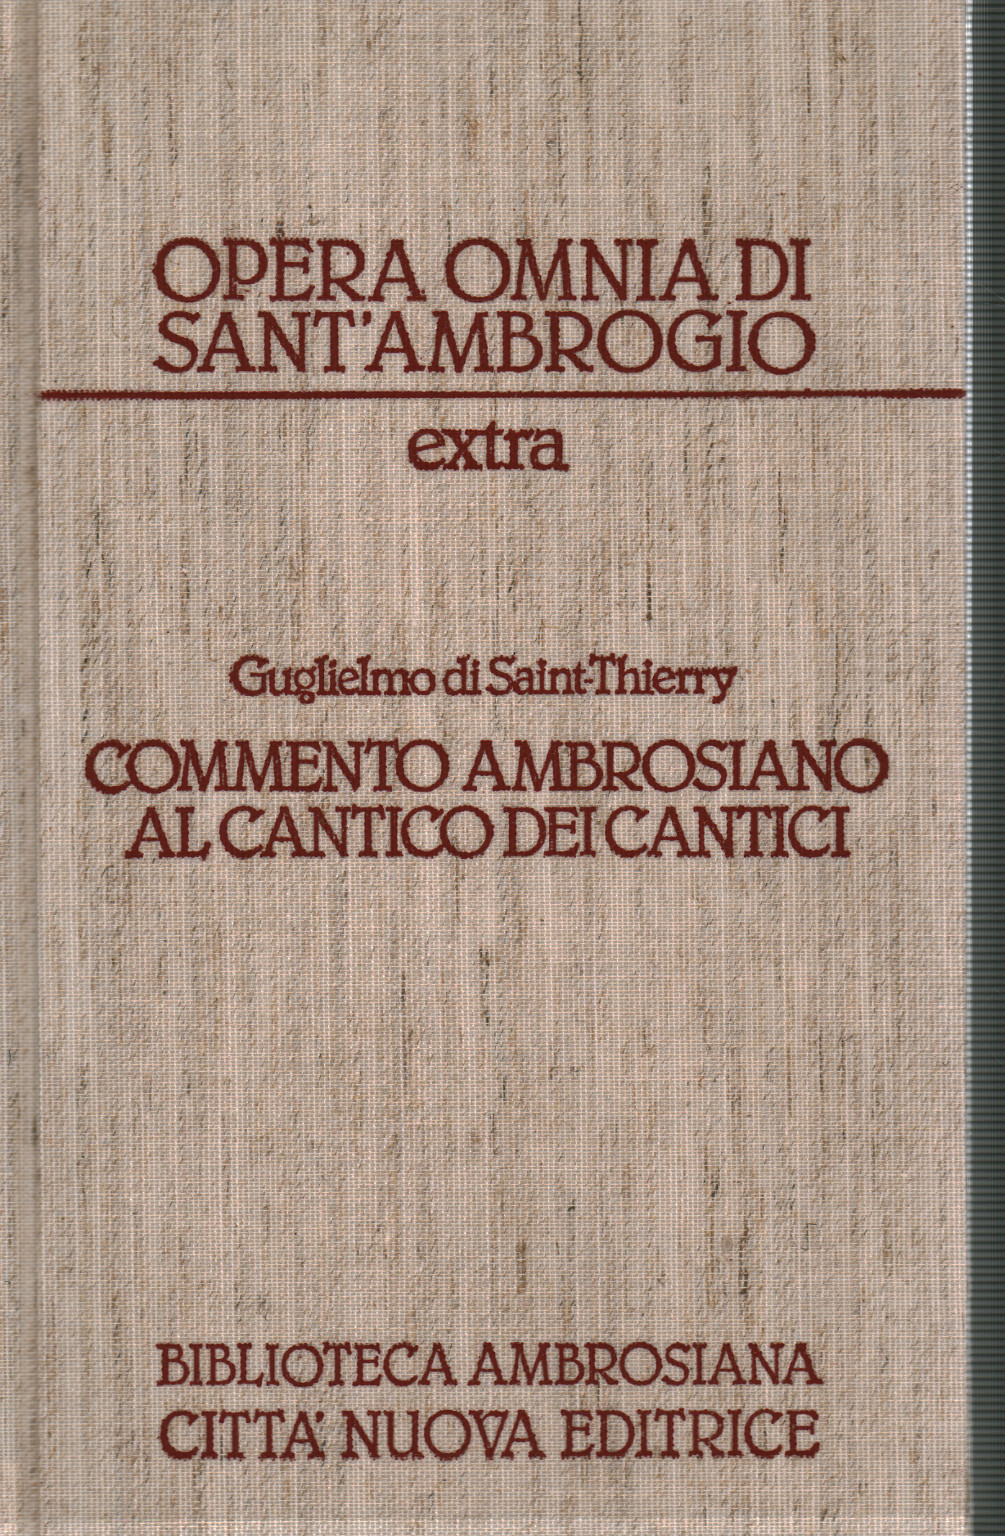 Guglielmo di Sain-Thierry commento ambrosiano al c, s.a.